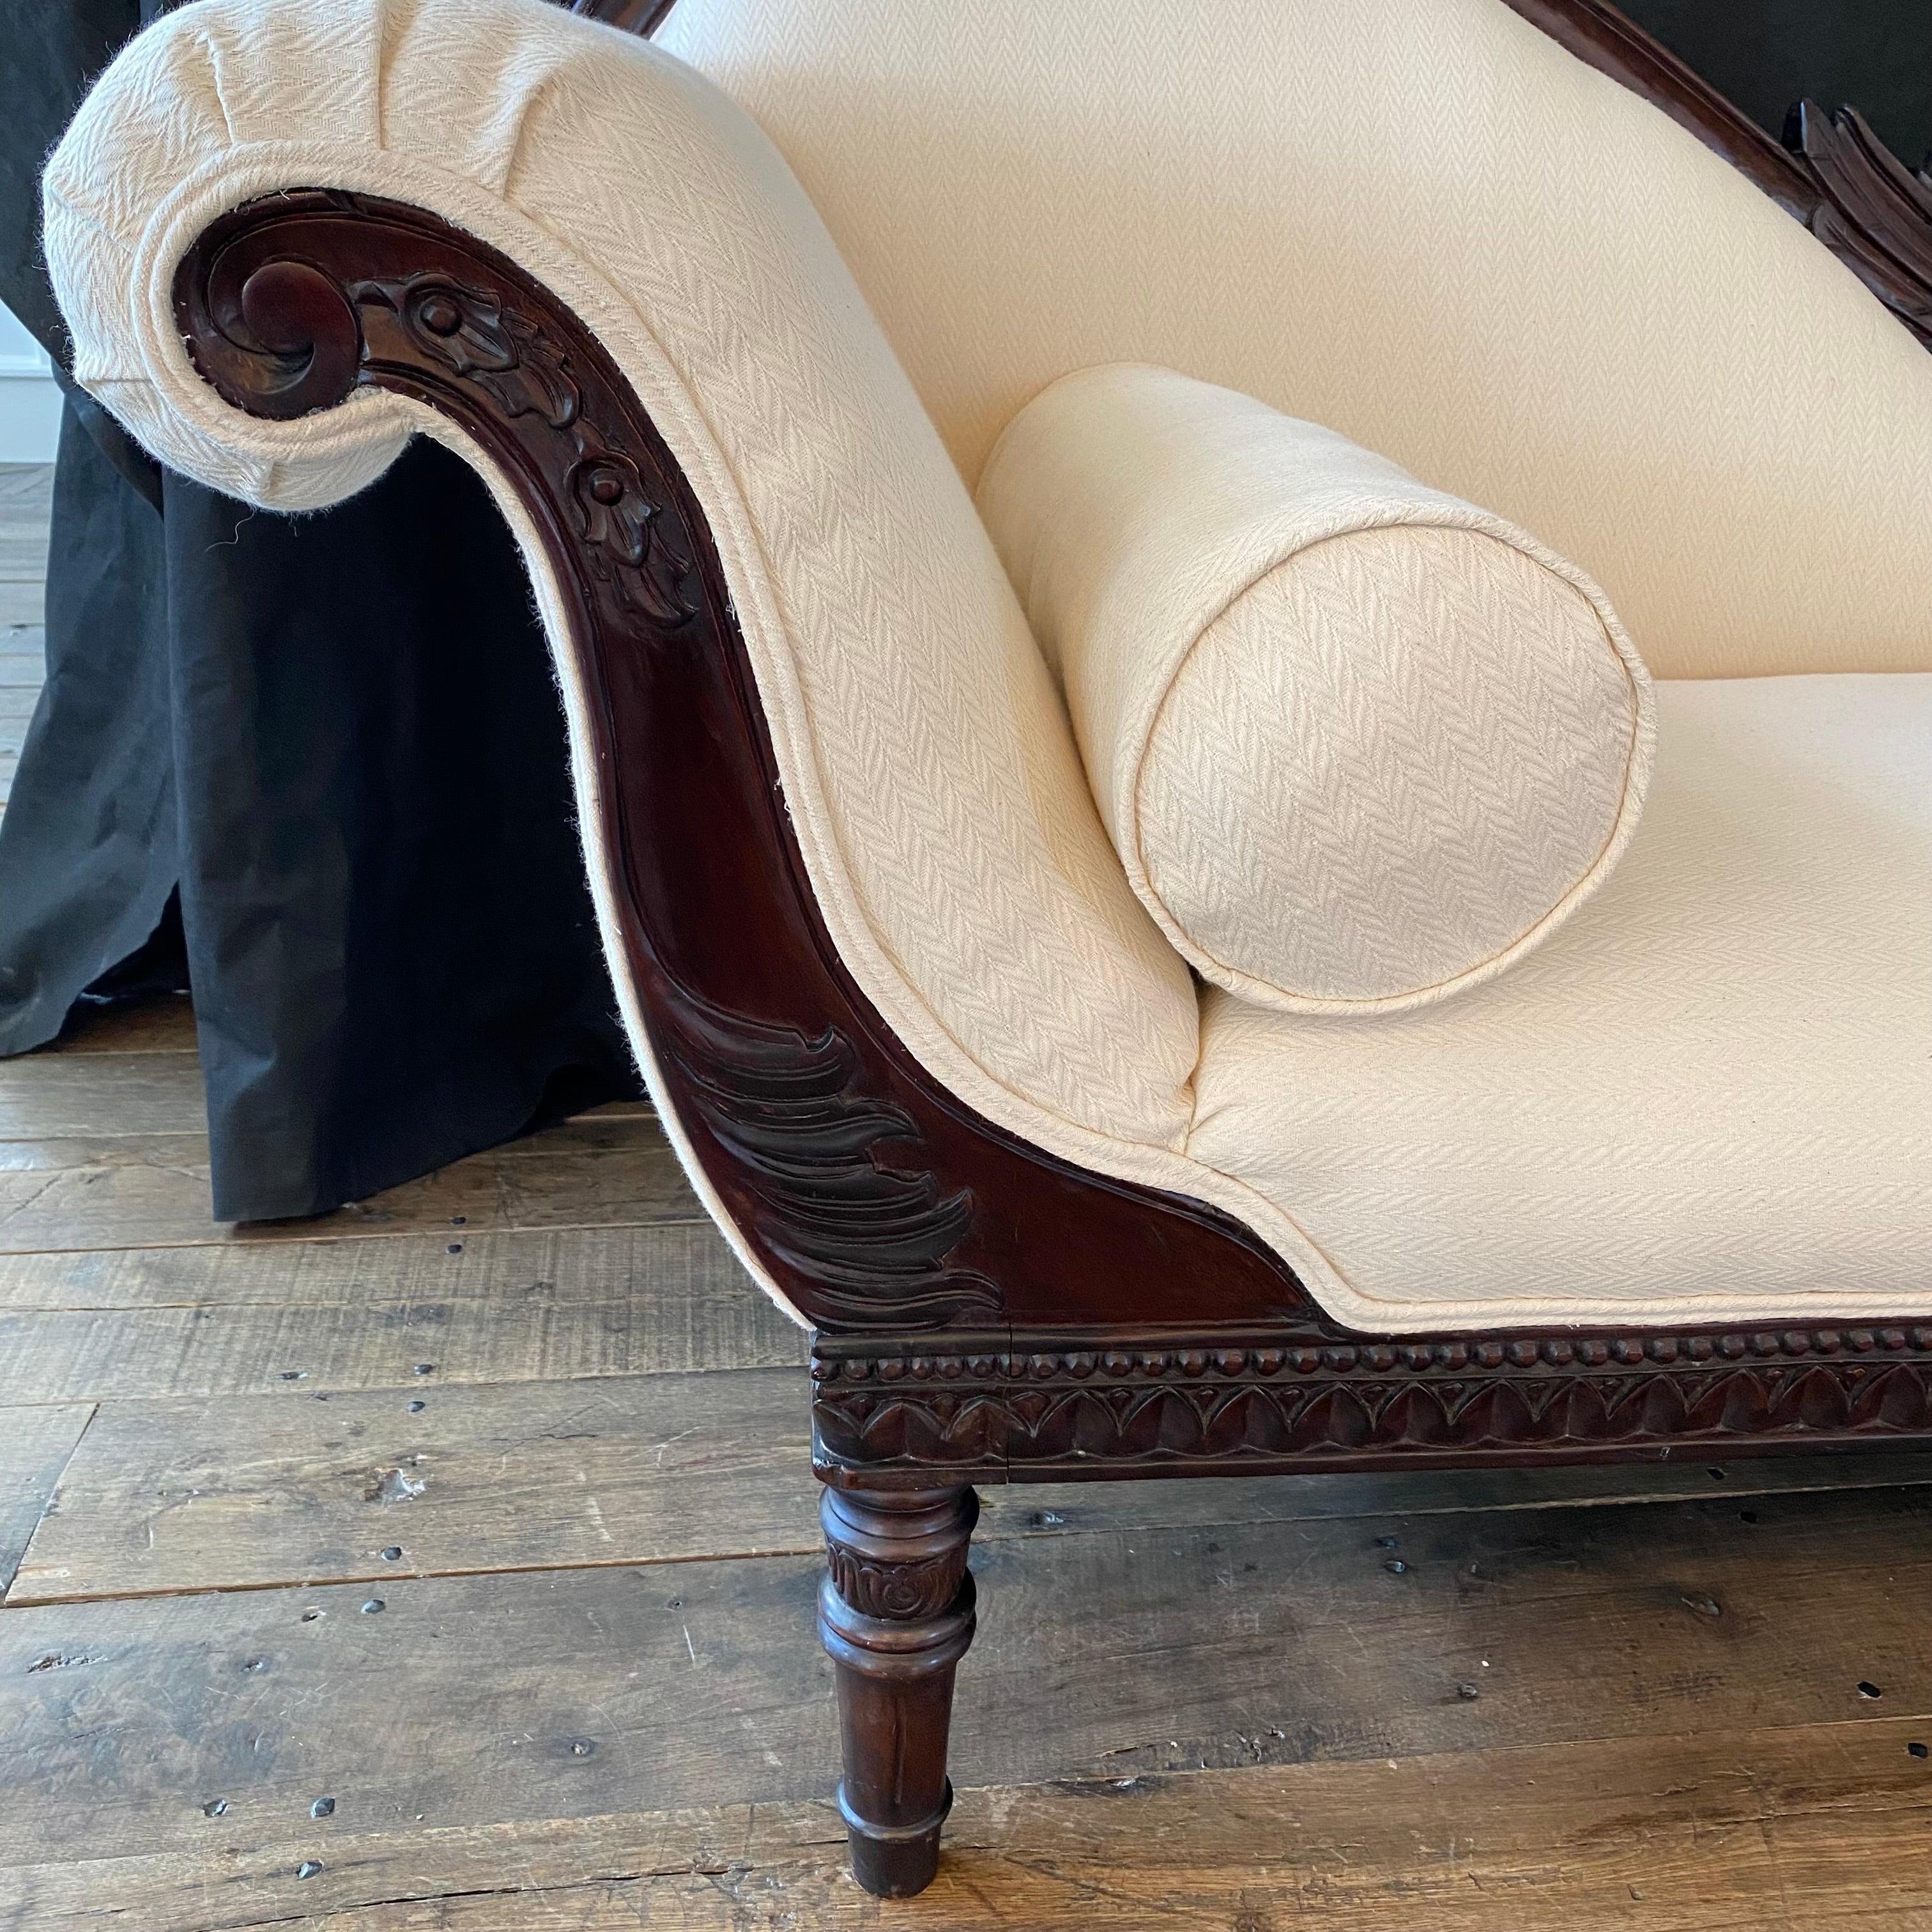 Récamier, chaise longue ou lit de jour Empire français du début du XIXe siècle, avec un cygne finement sculpté à l'avant et à l'arrière. Fabriqué en noyer massif avec des motifs néoclassiques de rosettes et de feuilles d'acanthe. Le salon est